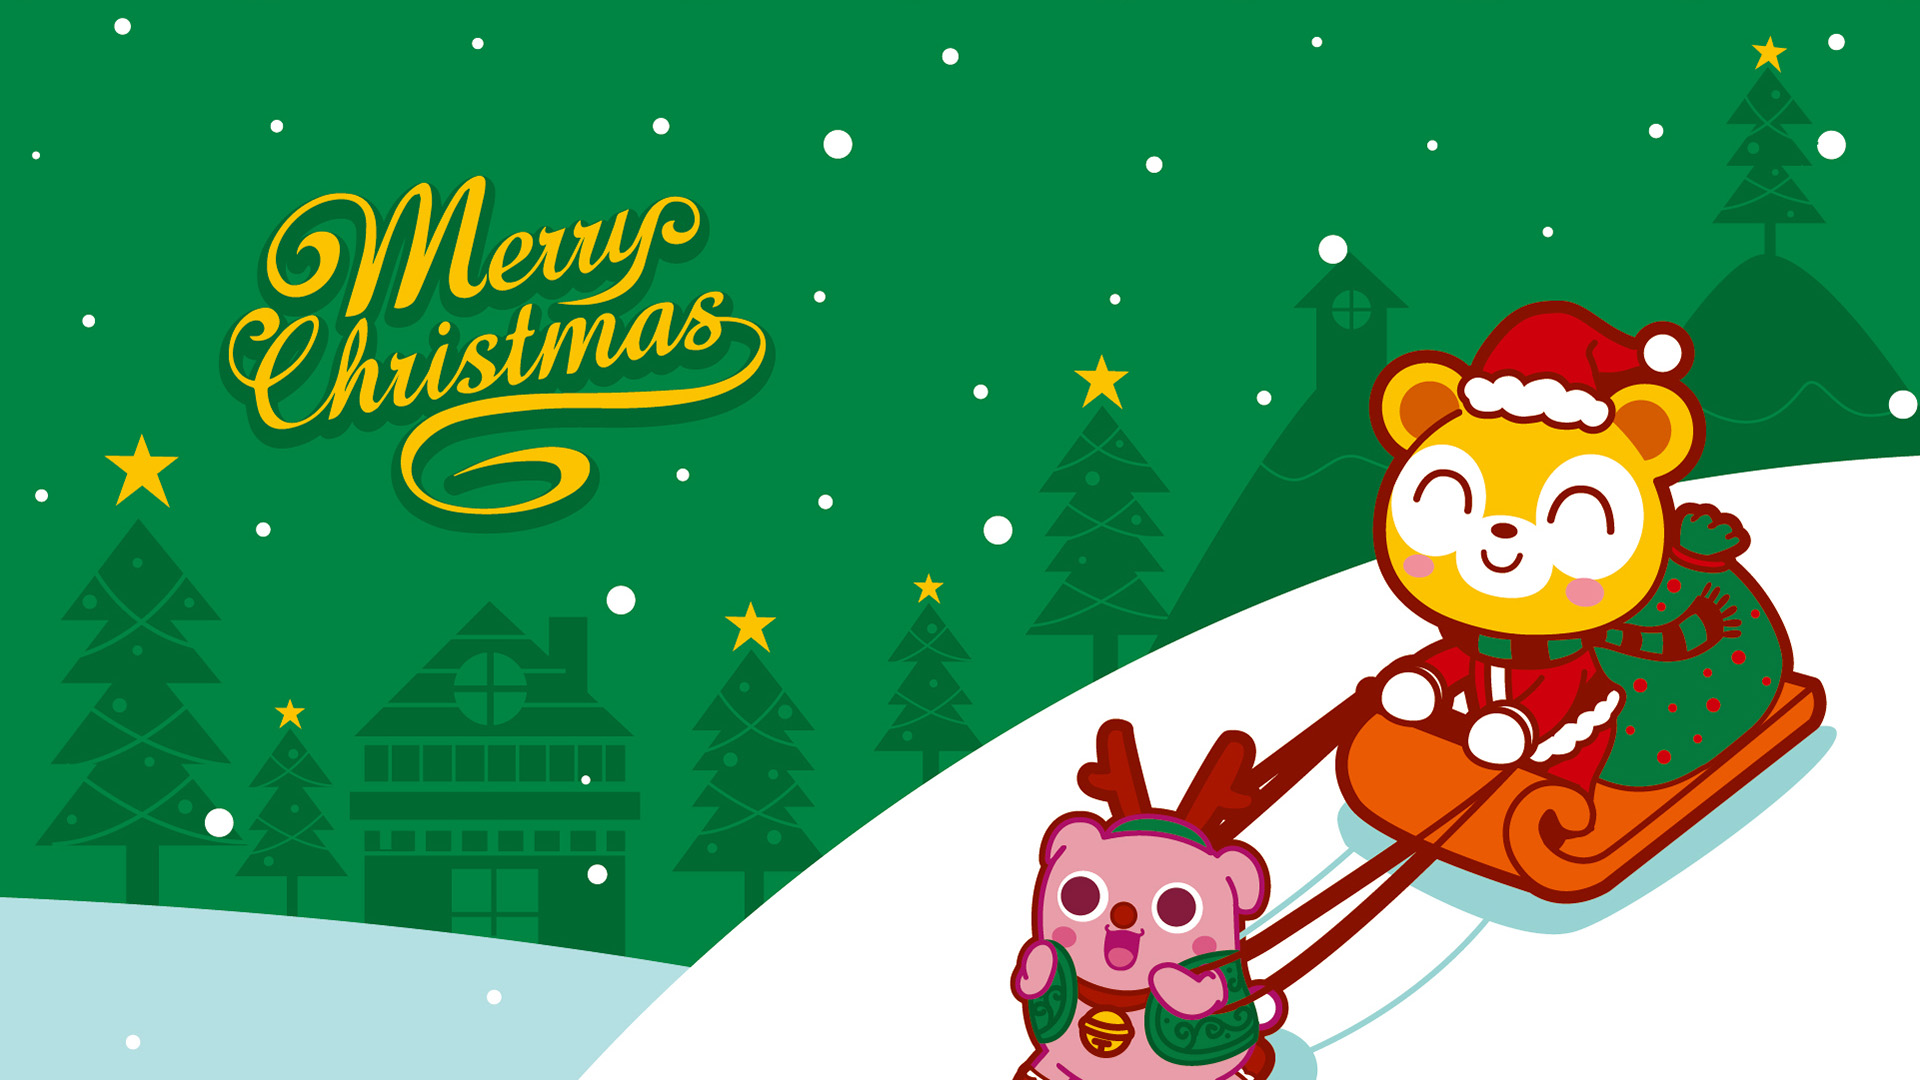 悠克熊,圣诞节,下雪,Merry Christmas,麋鹿,雪橇,圣诞老人,雪,圣诞树,壁纸